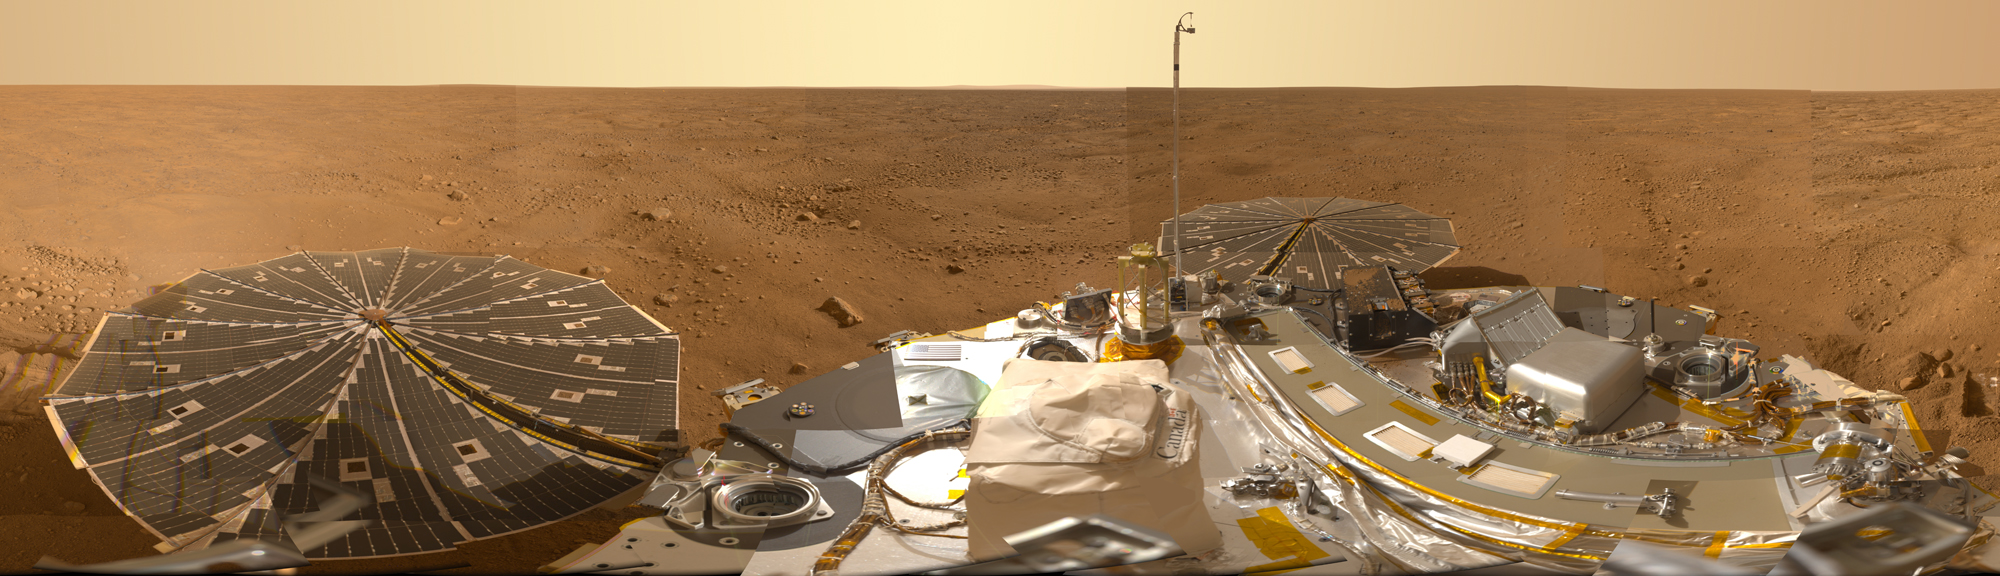 A Mars Life Explorer a NASA Phoenix szondájának fejlettebb műszerekkel felszerelt utódja lenne. A Phoenix 2008-as panorámaképén jól látszanak a Vastitas Borealis síkságot borító négyszögletes, permafroszt formációk